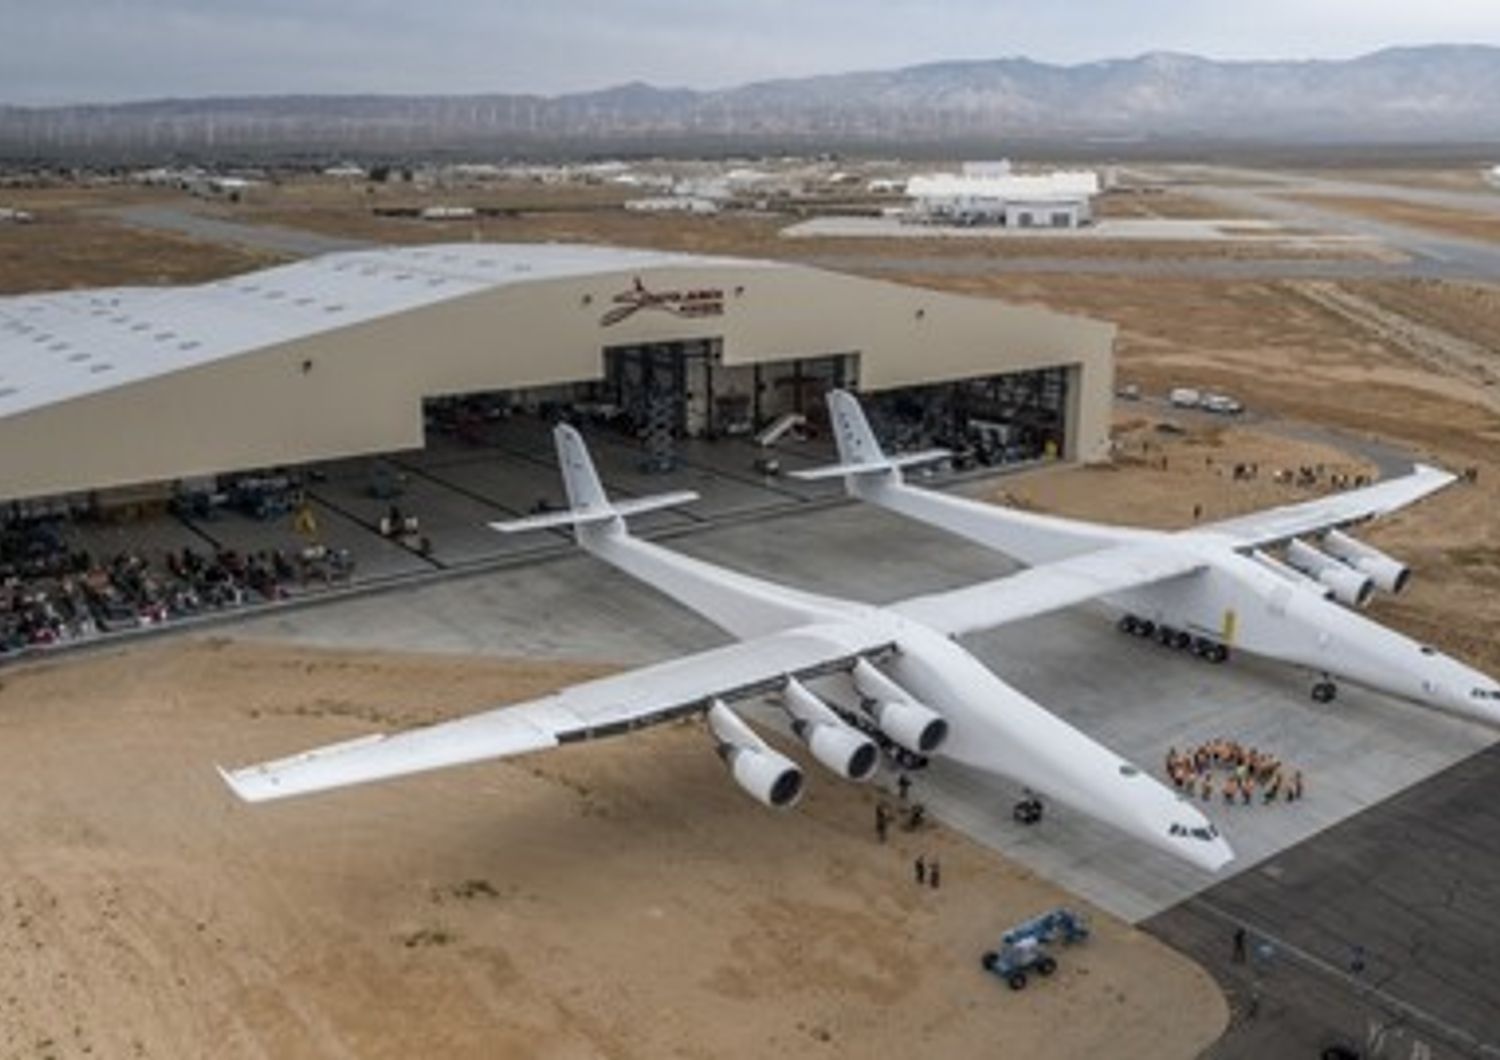 Perch&eacute; Paul Allen sta costruendo l&#39;aereo pi&ugrave; grande del mondo?